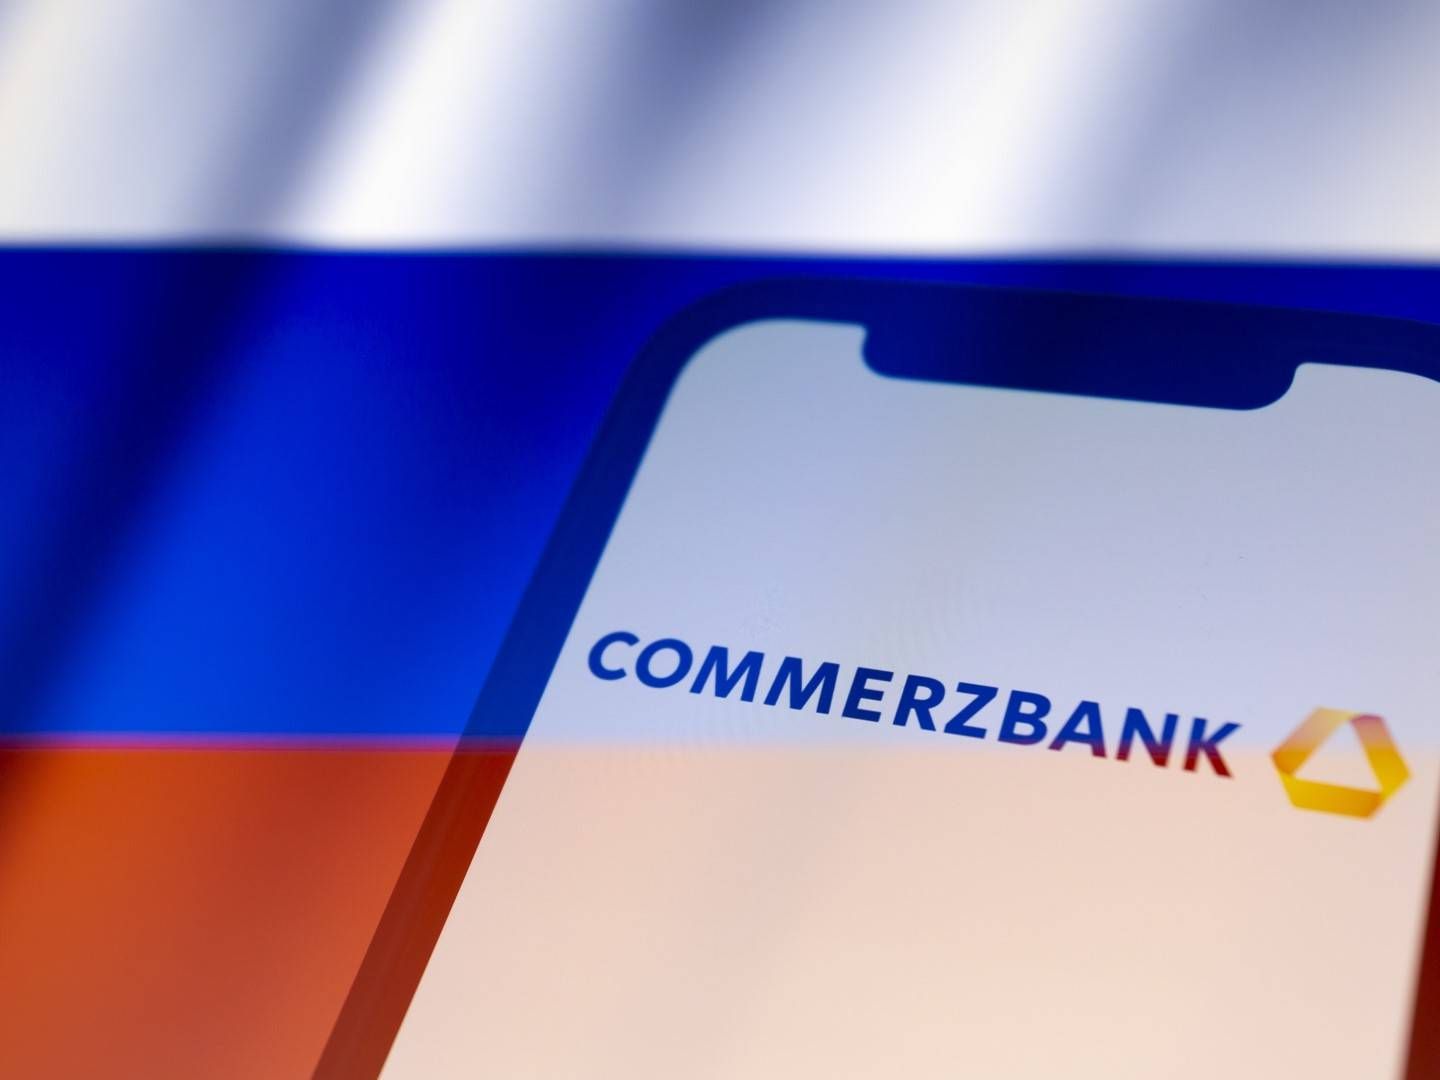 Commerzbank-App vor Russland-Flagge (Symbolbild) | Foto: picture alliance / ZUMAPRESS.com | Andre M. Chang